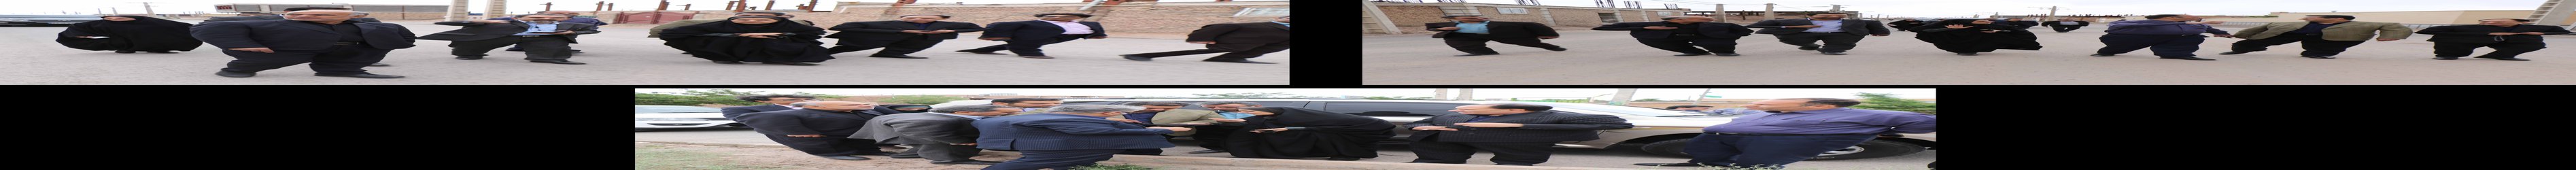 بازدید نمایندگان عالی وزارت راه و شهرسازی از شهر زیبای زرند در راستای تصویب طرح جامع این شهر